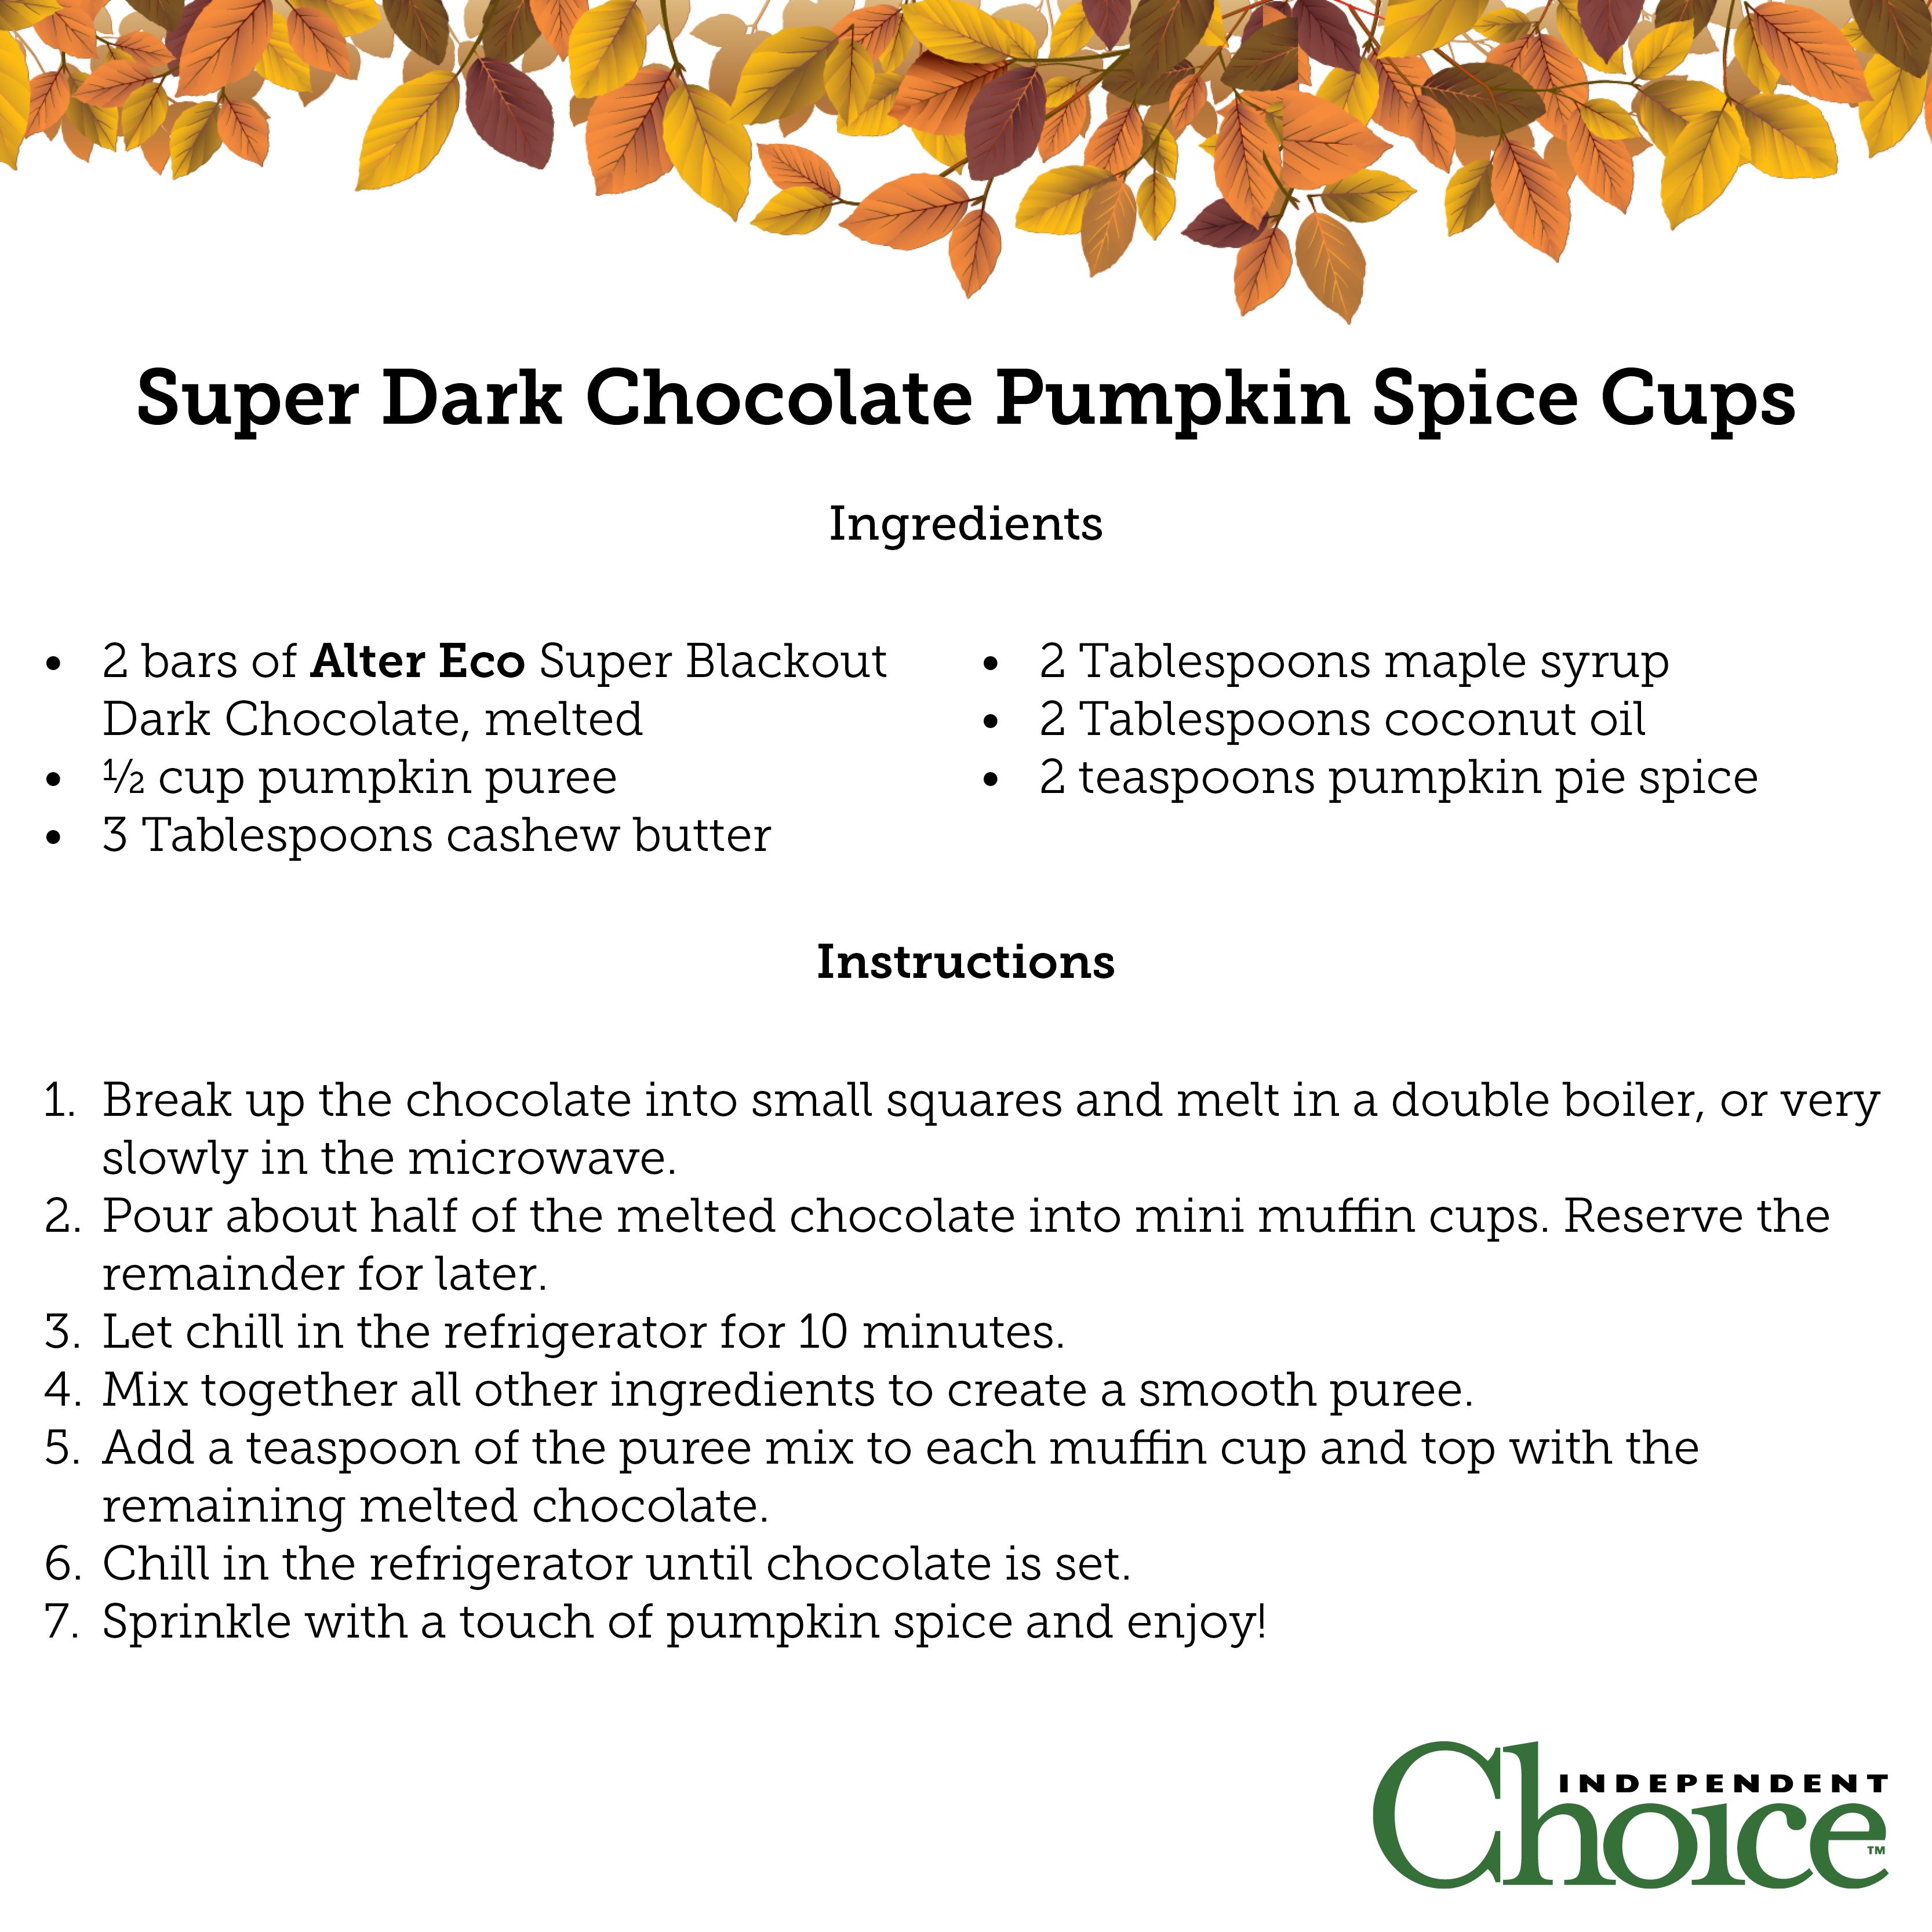 Super Dark Chocolate Pumpkin Spice Cups